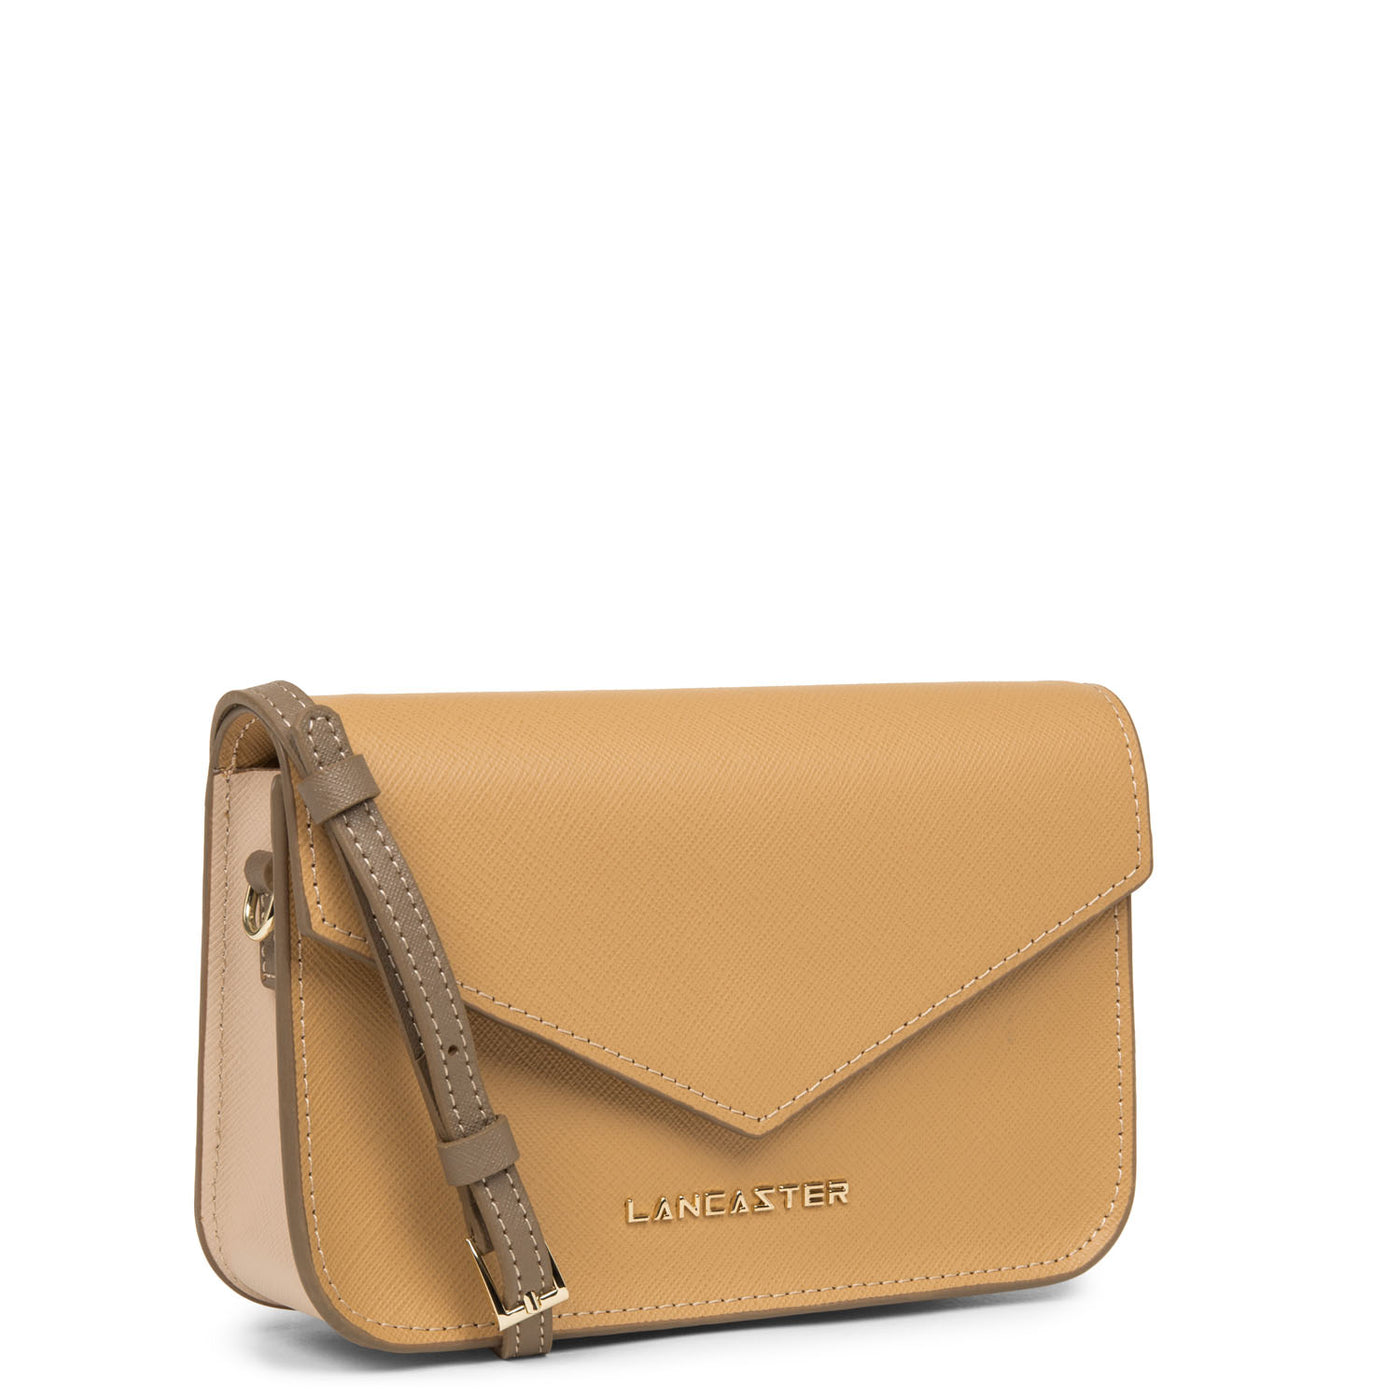 petit sac trotteur - saffiano signature #couleur_naturel-poudre-vison